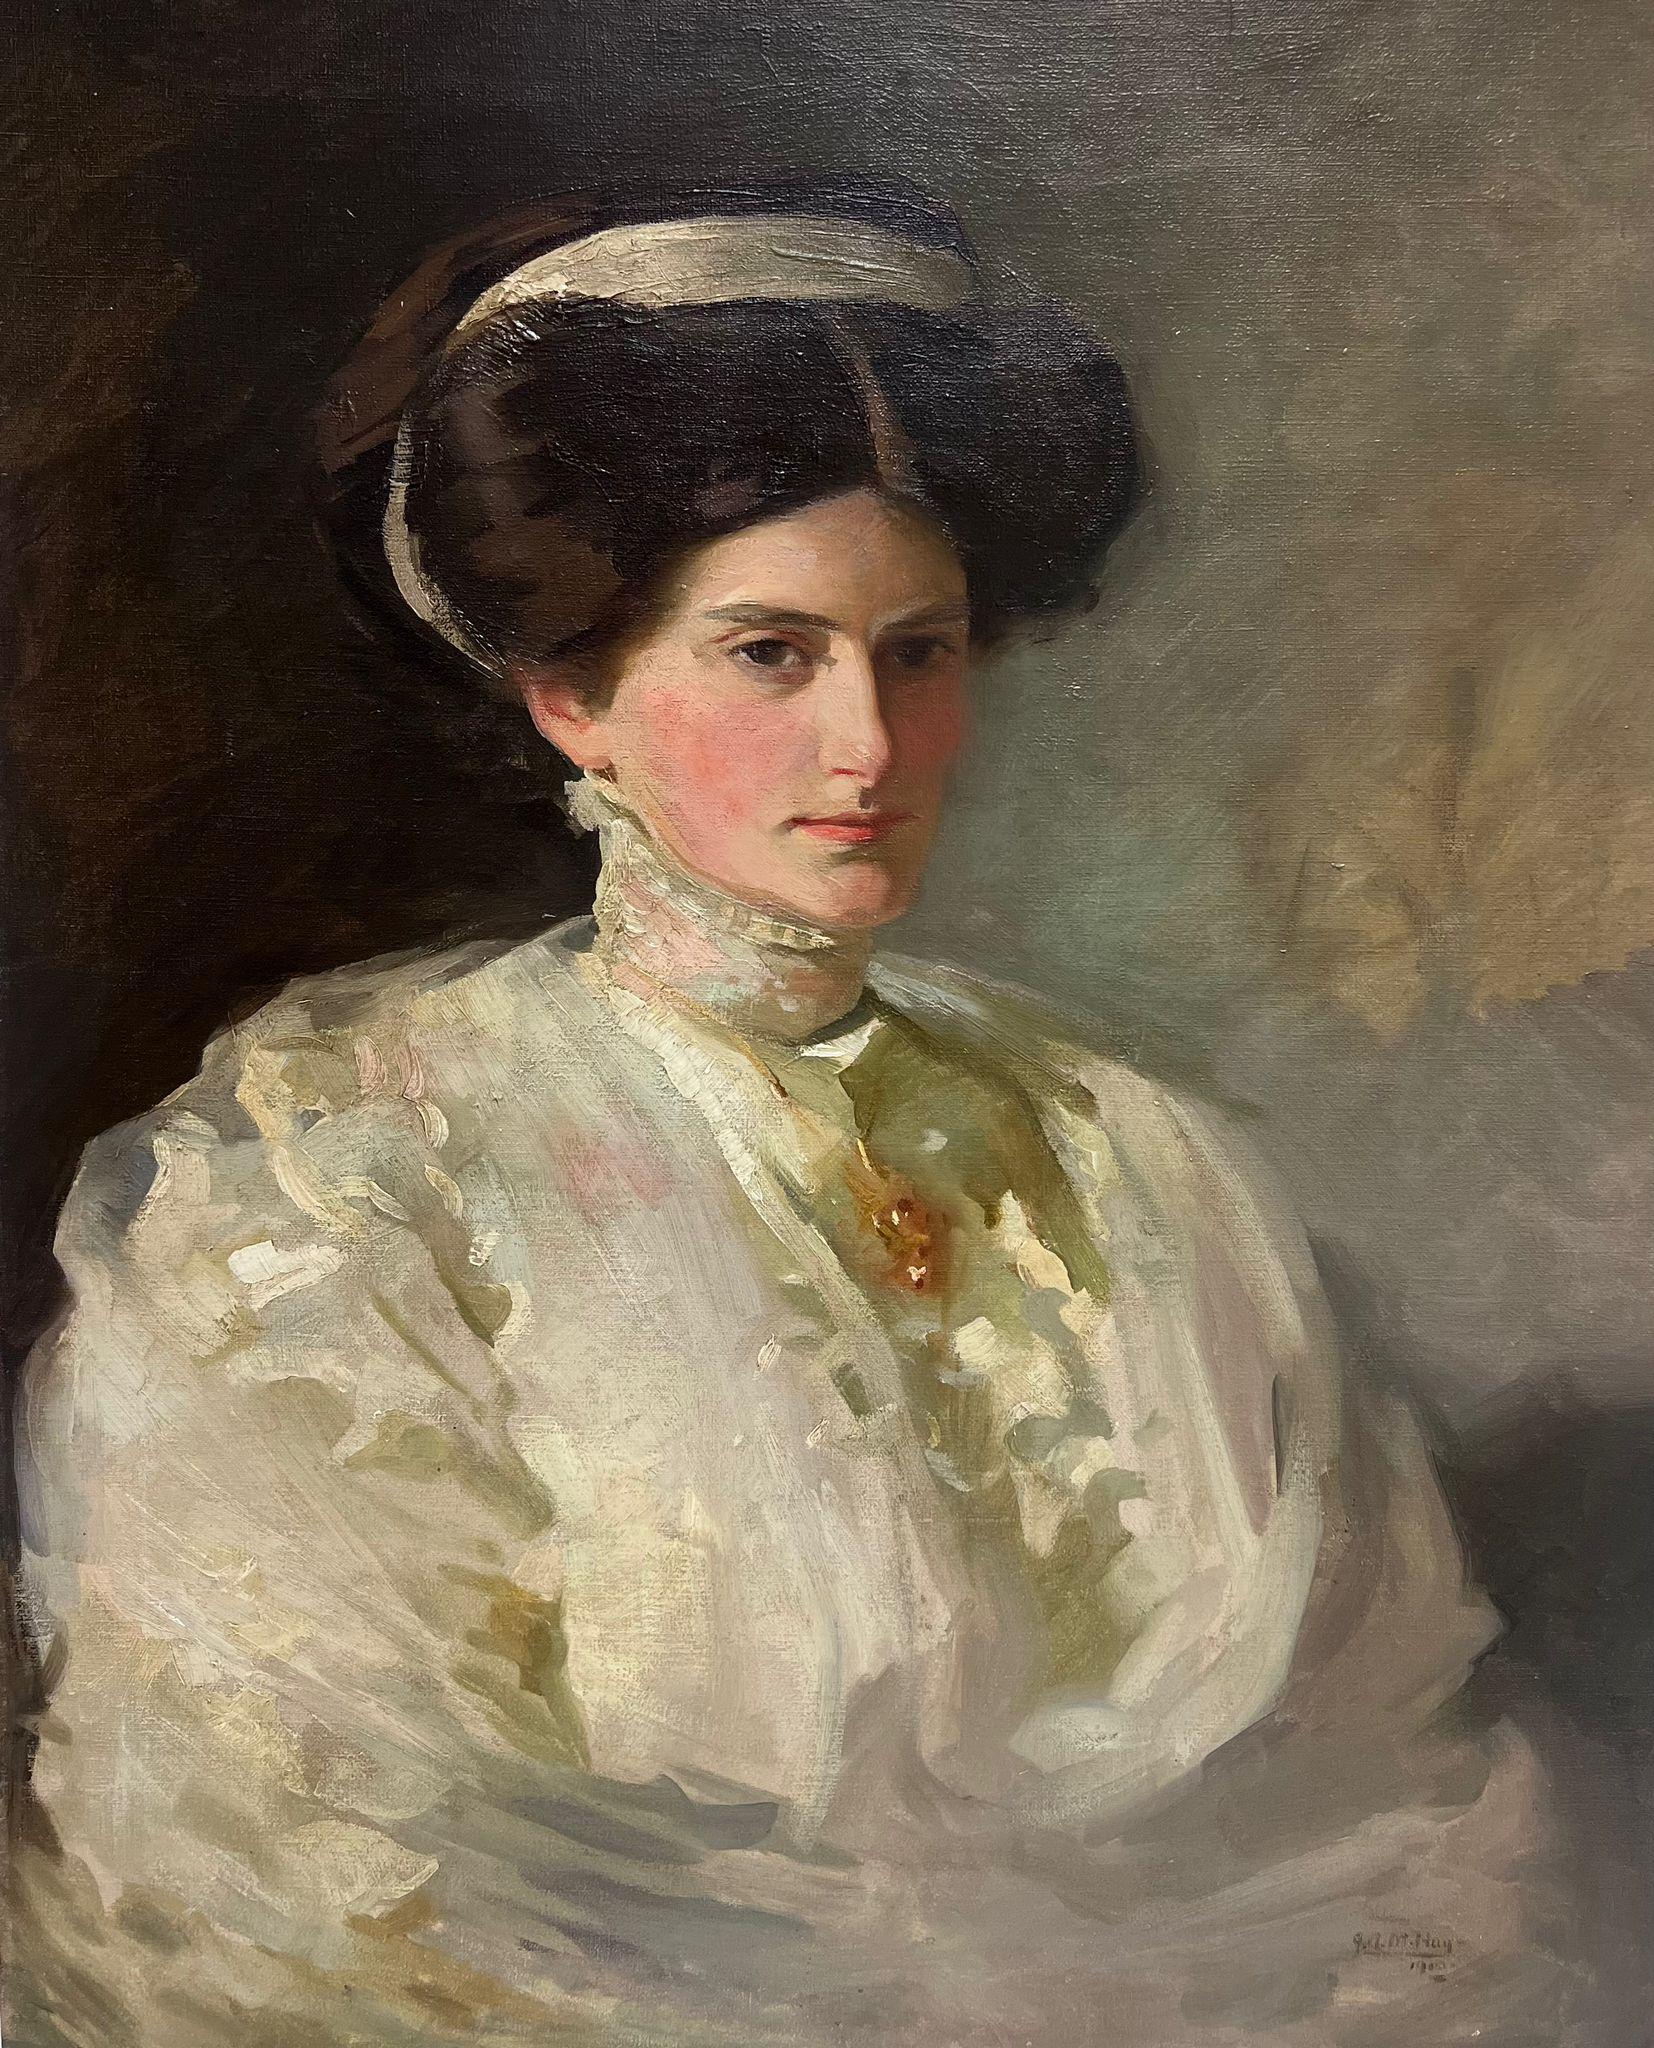 Fine Edwardian British Society, Porträt einer eleganten Dame, signiertes Ölgemälde, Edwardian British Society – Painting von John Arthur Machray Hay (1887-1960)